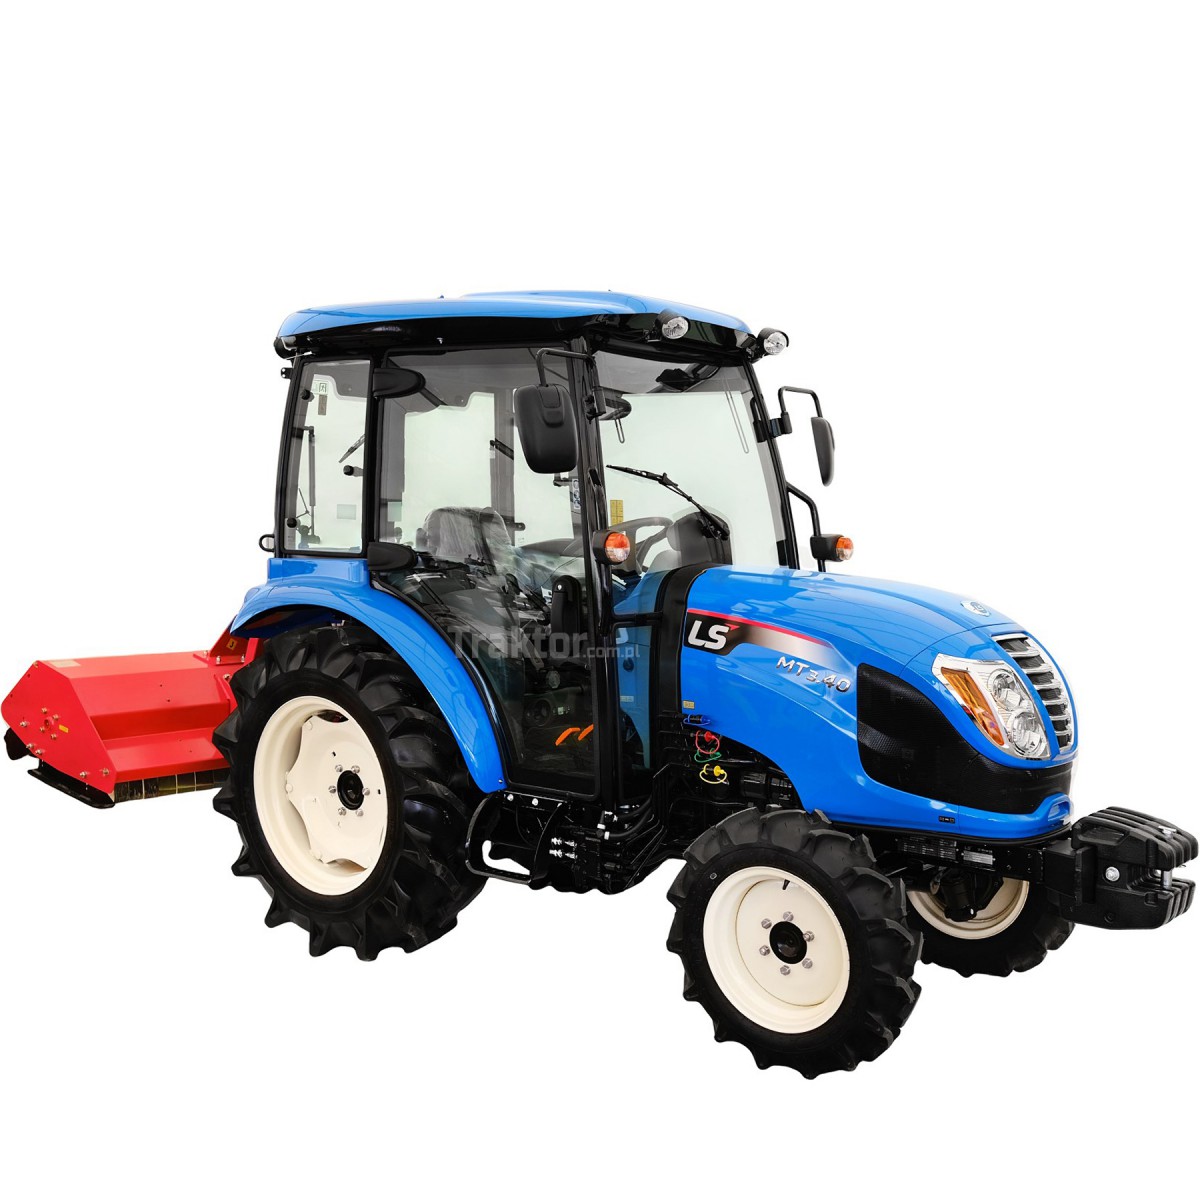 LS Traktor MT3.40 MEC 4x4 - 40 HP / CAB + cepová sekačka EFGC 145D 4FARMER